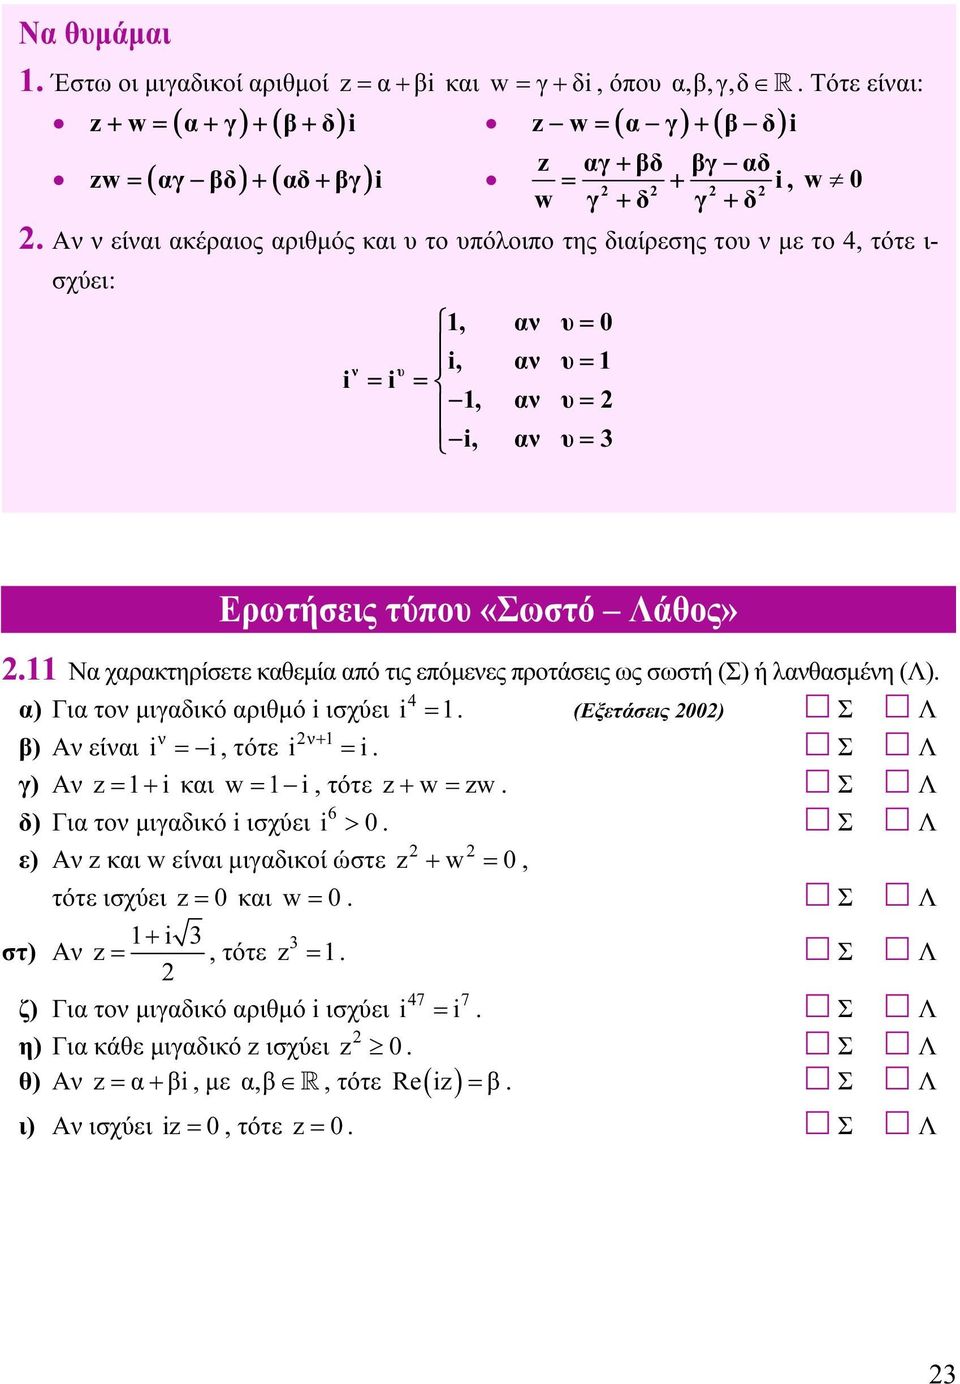 Για το μιγαδικό αριθμό ισχύει 4 = (Εξετάσεις 00) Σ Λ β) Α είαι =, τότε + = Σ Λ γ) Α = + και w =, τότε + w = w Σ Λ δ) Για το μιγαδικό ισχύει 6 0 ε) Α και w είαι μιγαδικοί ώστε Ερωτήσεις τύπου «Σωστό